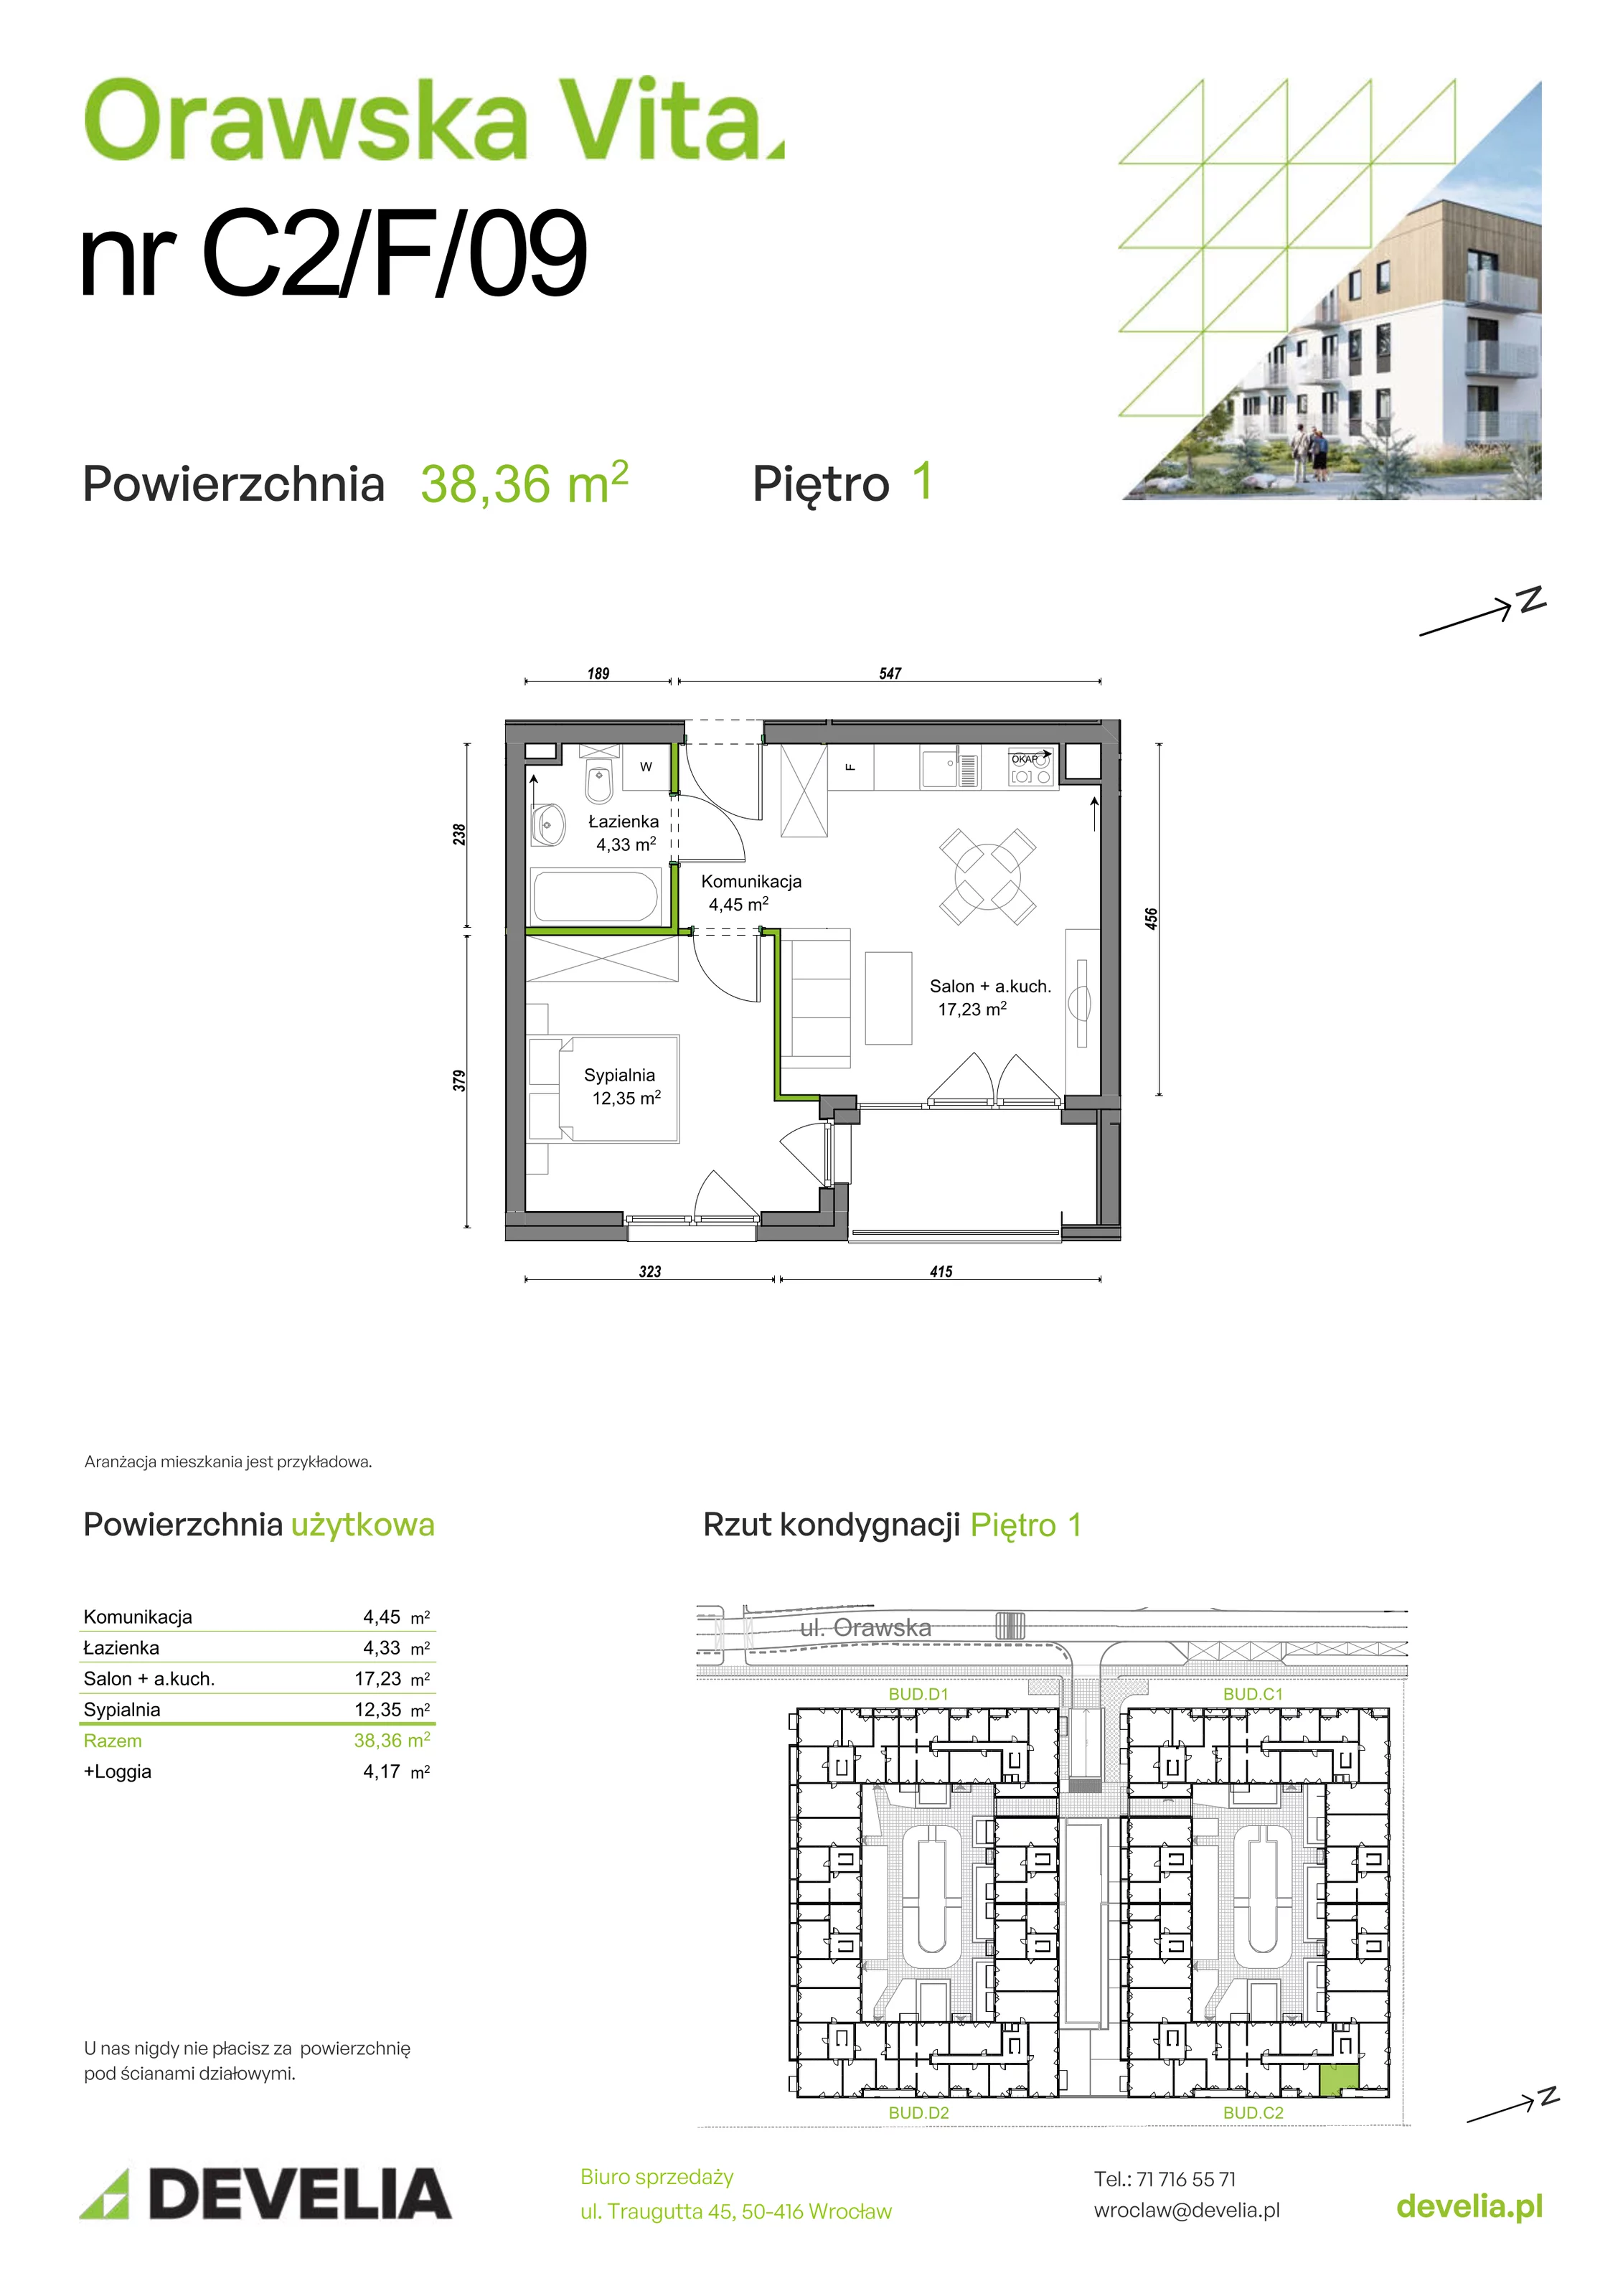 Mieszkanie 38,36 m², piętro 1, oferta nr C2/F/09, Orawska Vita, Wrocław, Ołtaszyn, Krzyki, ul. Orawska 73